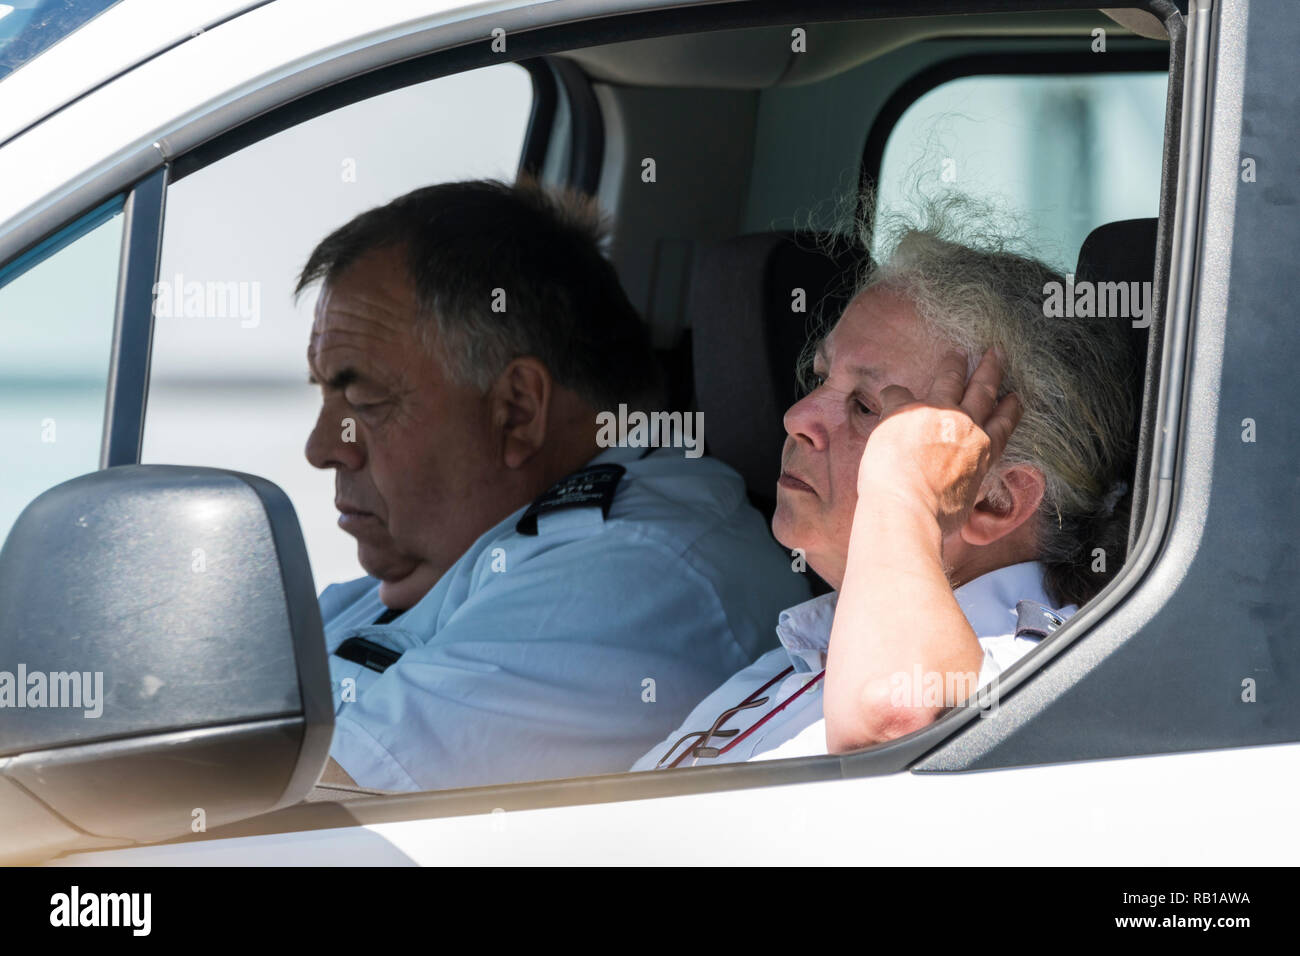 Un paio di persone che guardano annoiati e stufi, appaiono essere parcheggiatori, seduti in un furgone apparentemente guardare fuori per le vittime, nel Regno Unito. Foto Stock